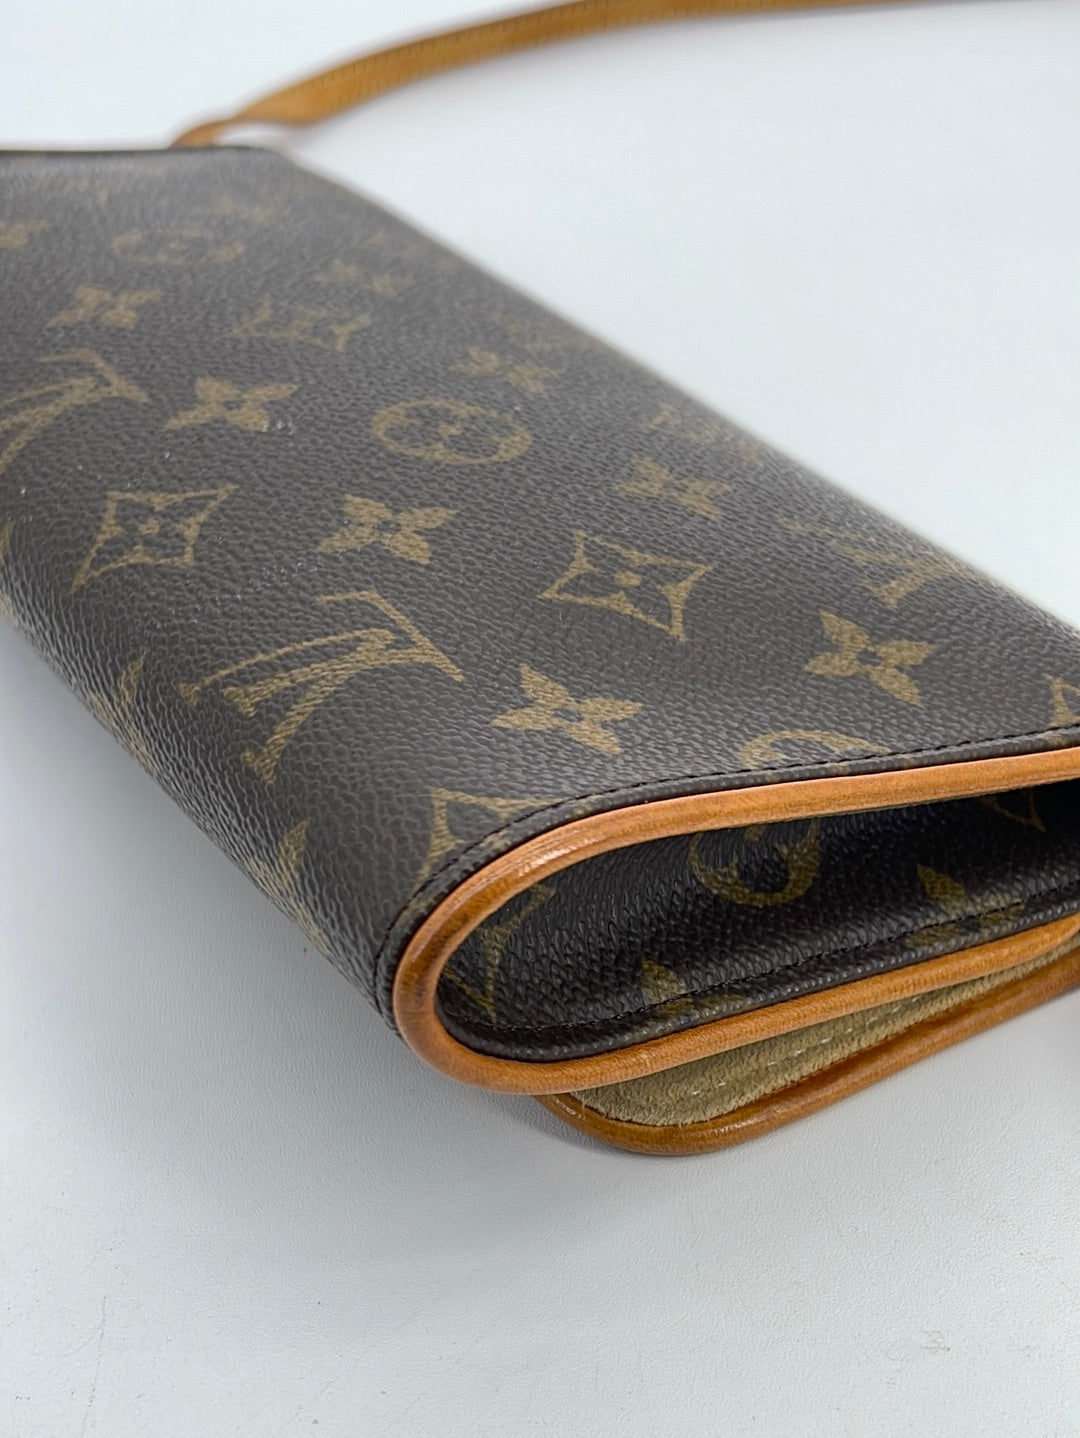 ❌❌SOLD💥Louis Vuitton Compiegne 28 Shoulder Bag